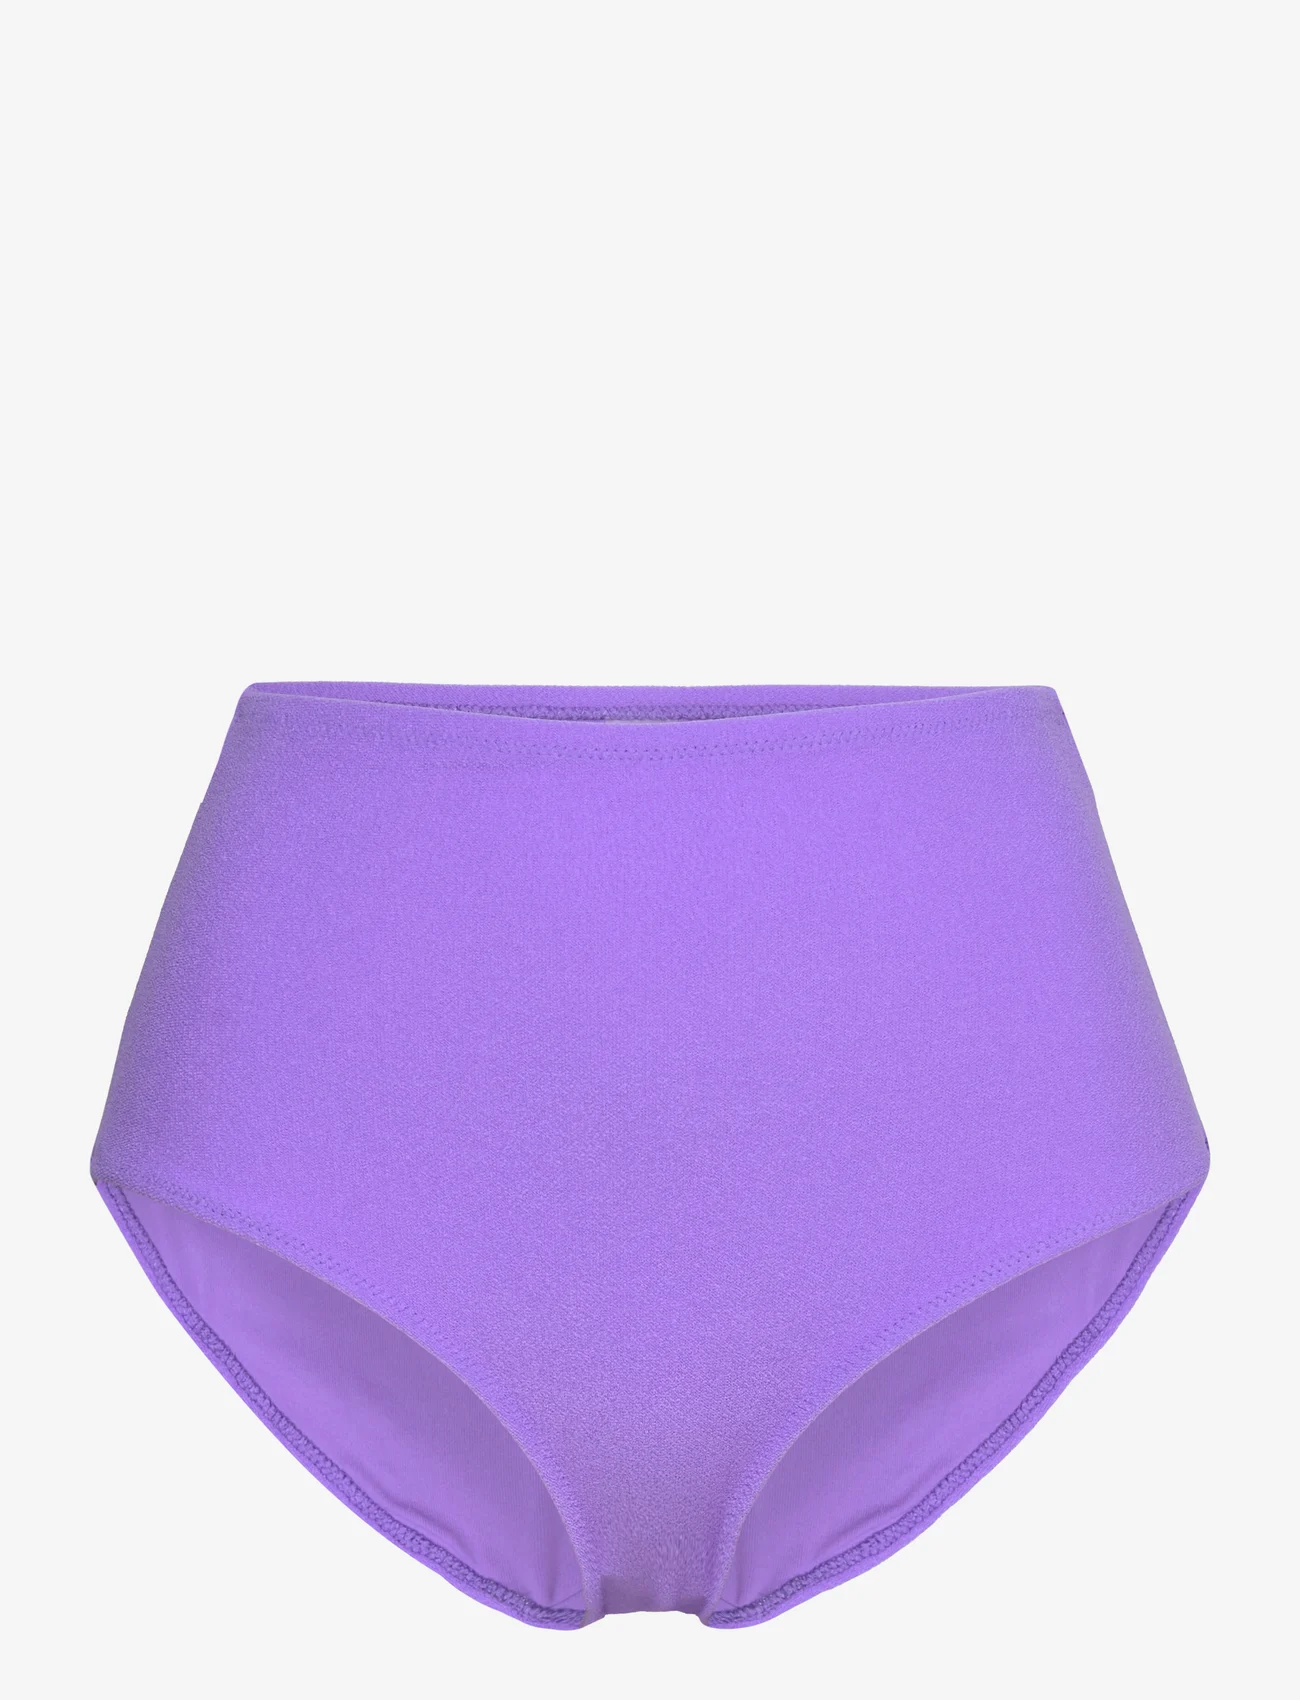 Understatement Underwear - Highwaist Bikini Briefs - high waist bikini bottoms - electric lilac - 0